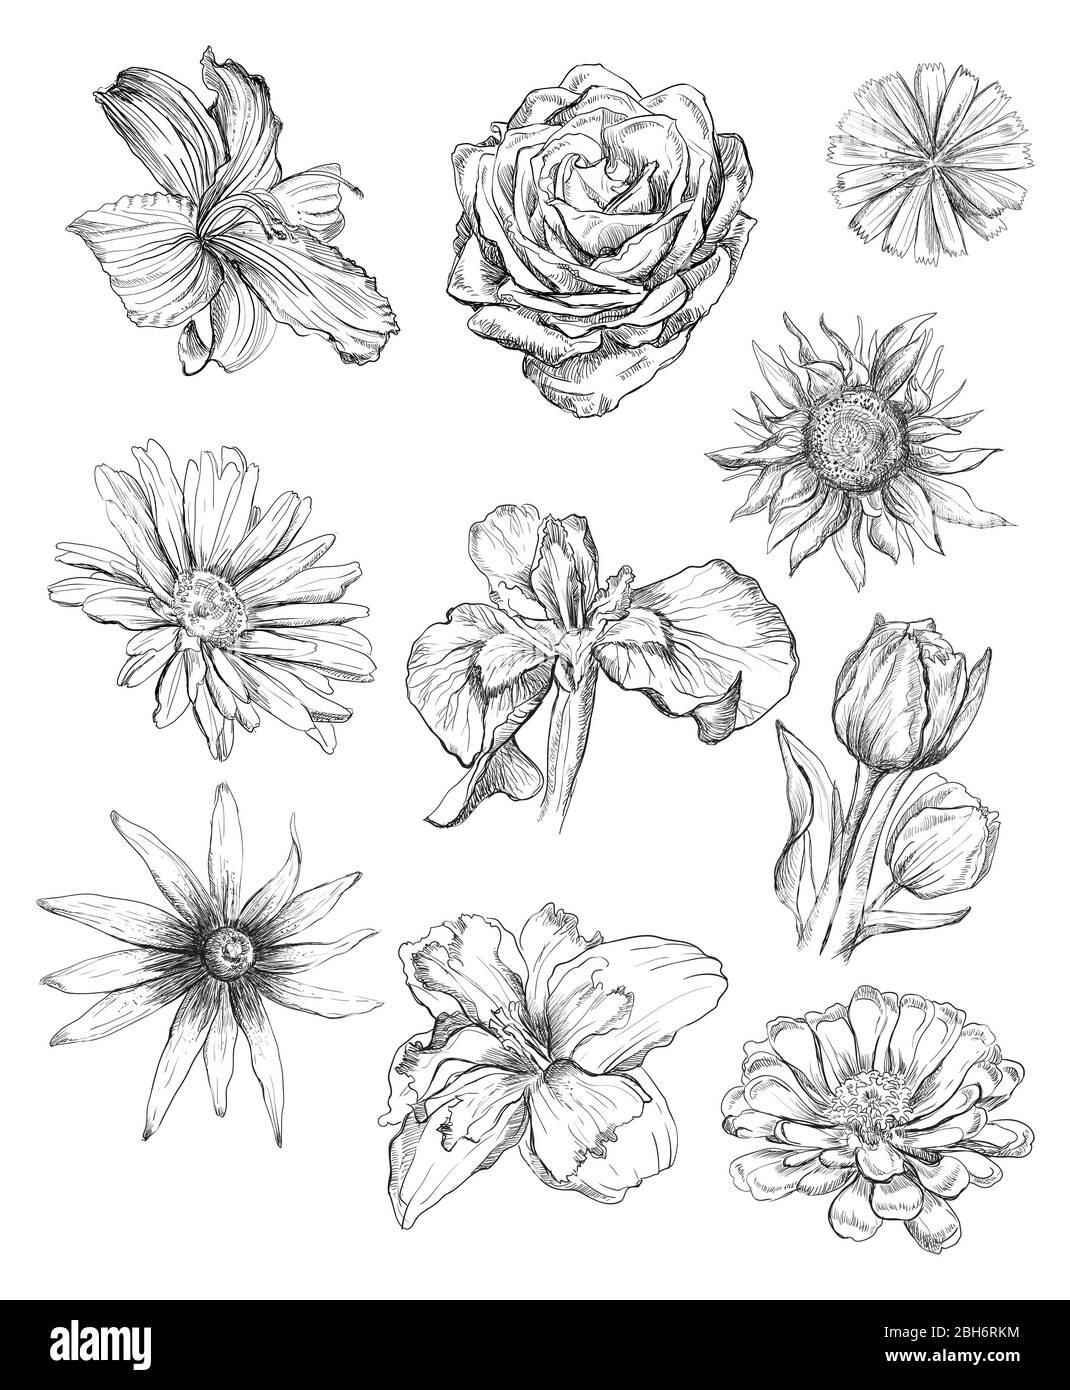 Set di fiori per disegno manuale. Illustrazione di uno schizzo vettoriale monocromatico di fiori di colore nero isolati su sfondo bianco. Elema di disegno floreale di sommer Illustrazione Vettoriale